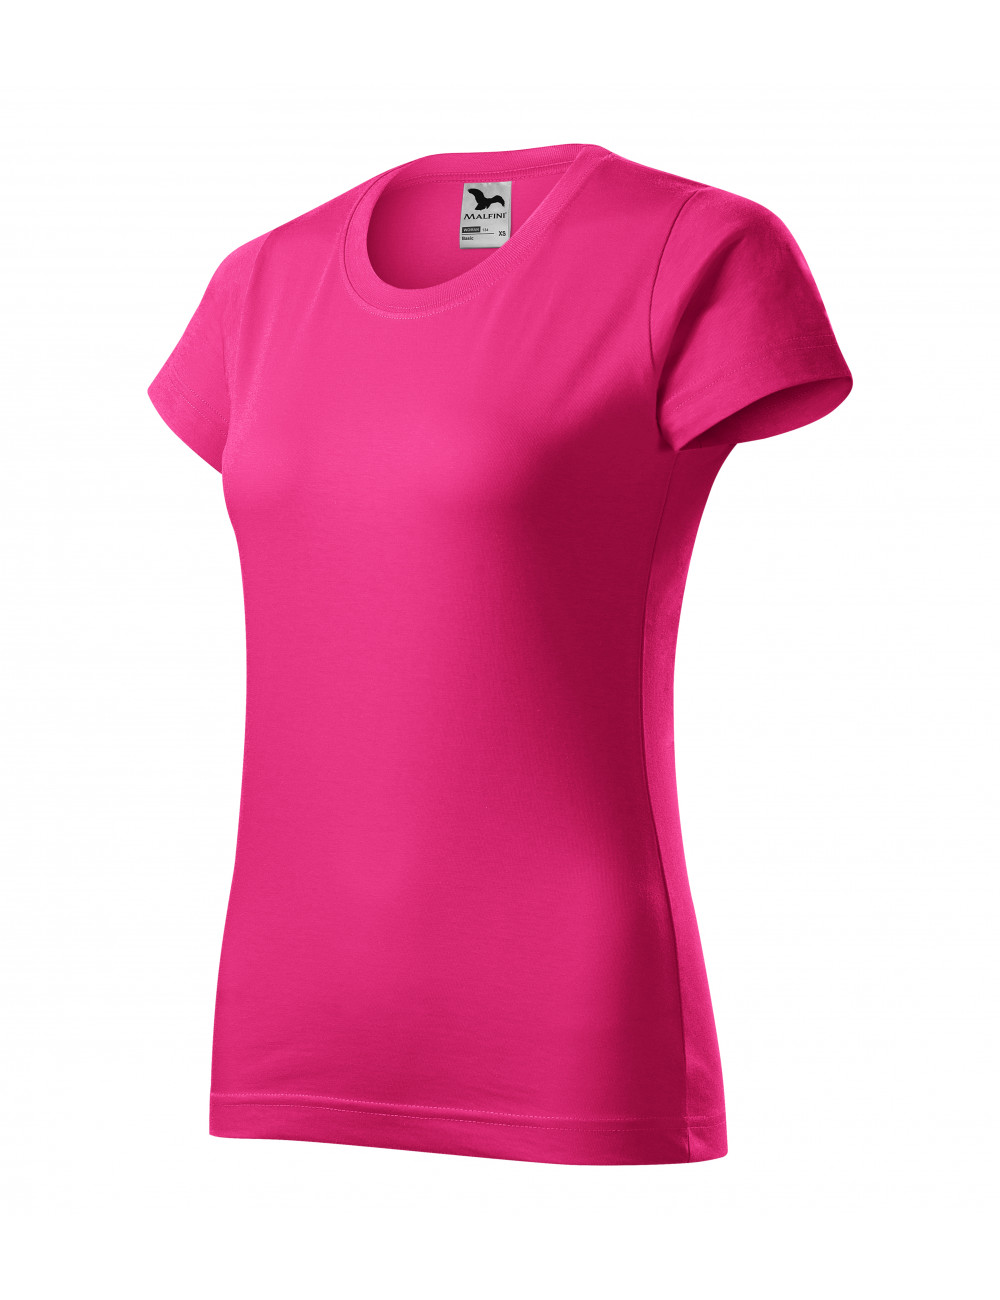 Basic Damen T-Shirt 134 lila rot Adler Malfini